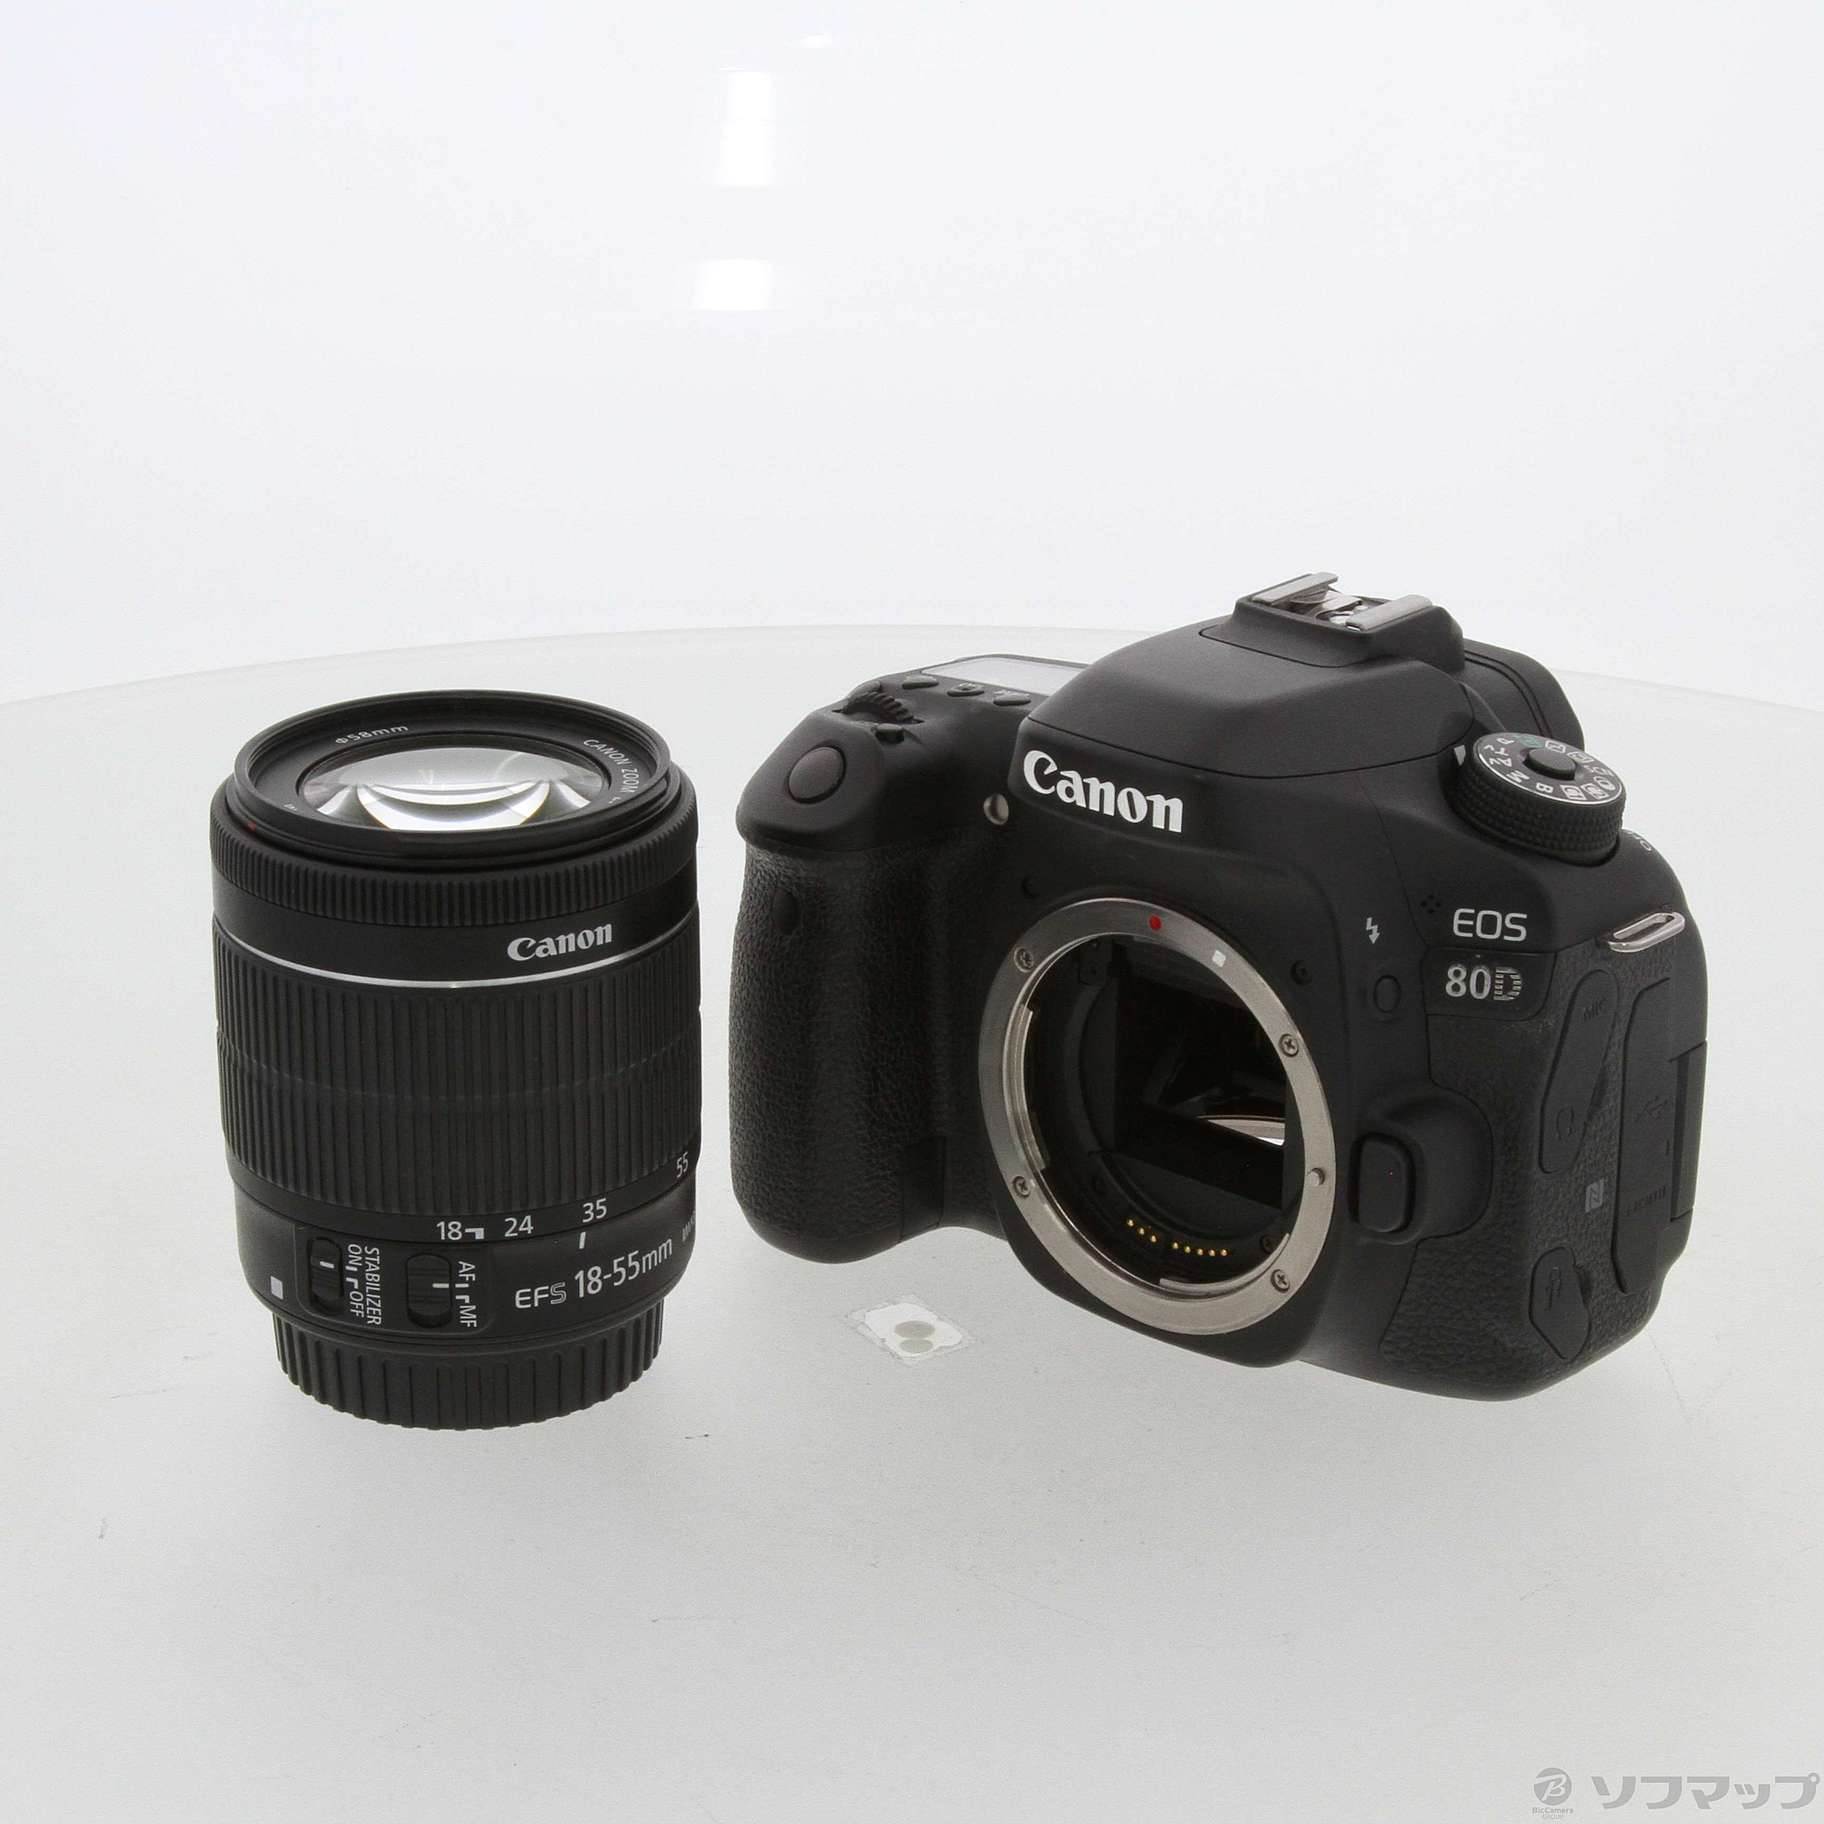 ブルー系2021最新のスタイル Canon EOS 80D(W) EF-S18-55 IS STM レンズキット デジタルカメラ  カメラブルー系￥41,614-eur-artec.fr